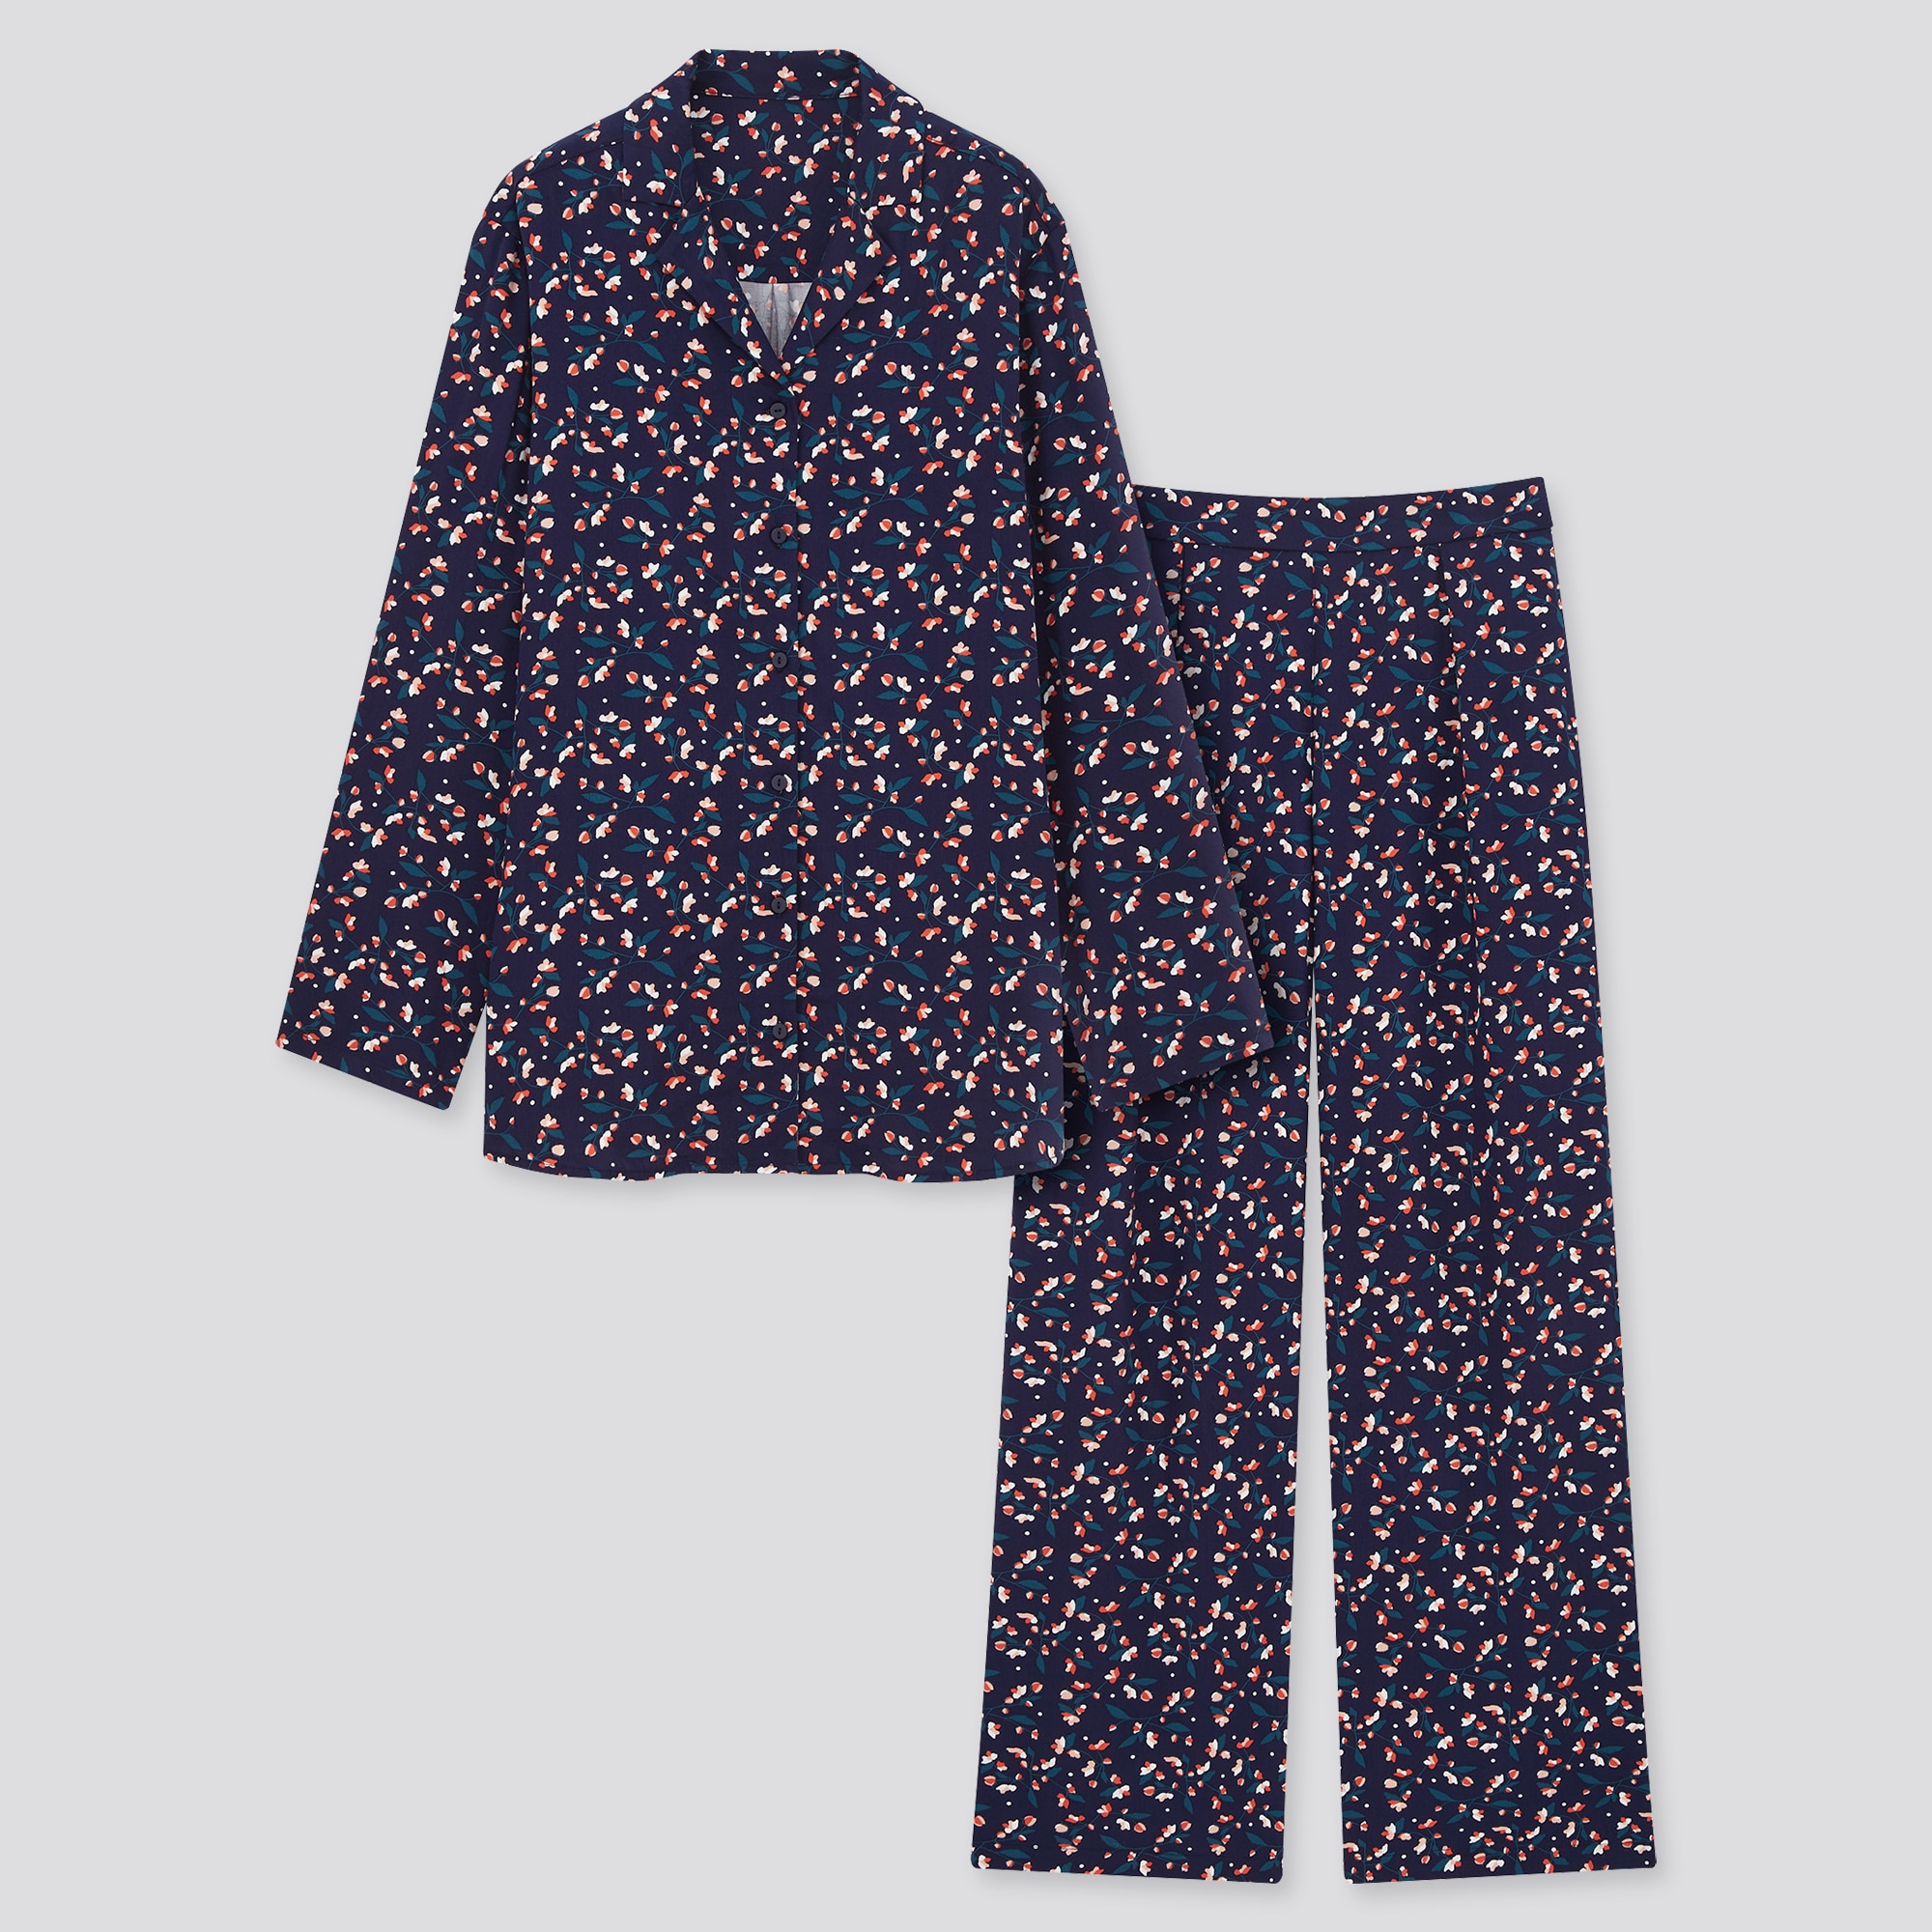 Bộ Pijama nữ Uniqlo  412886  Mua hàng trực tuyến giá tốt nhất